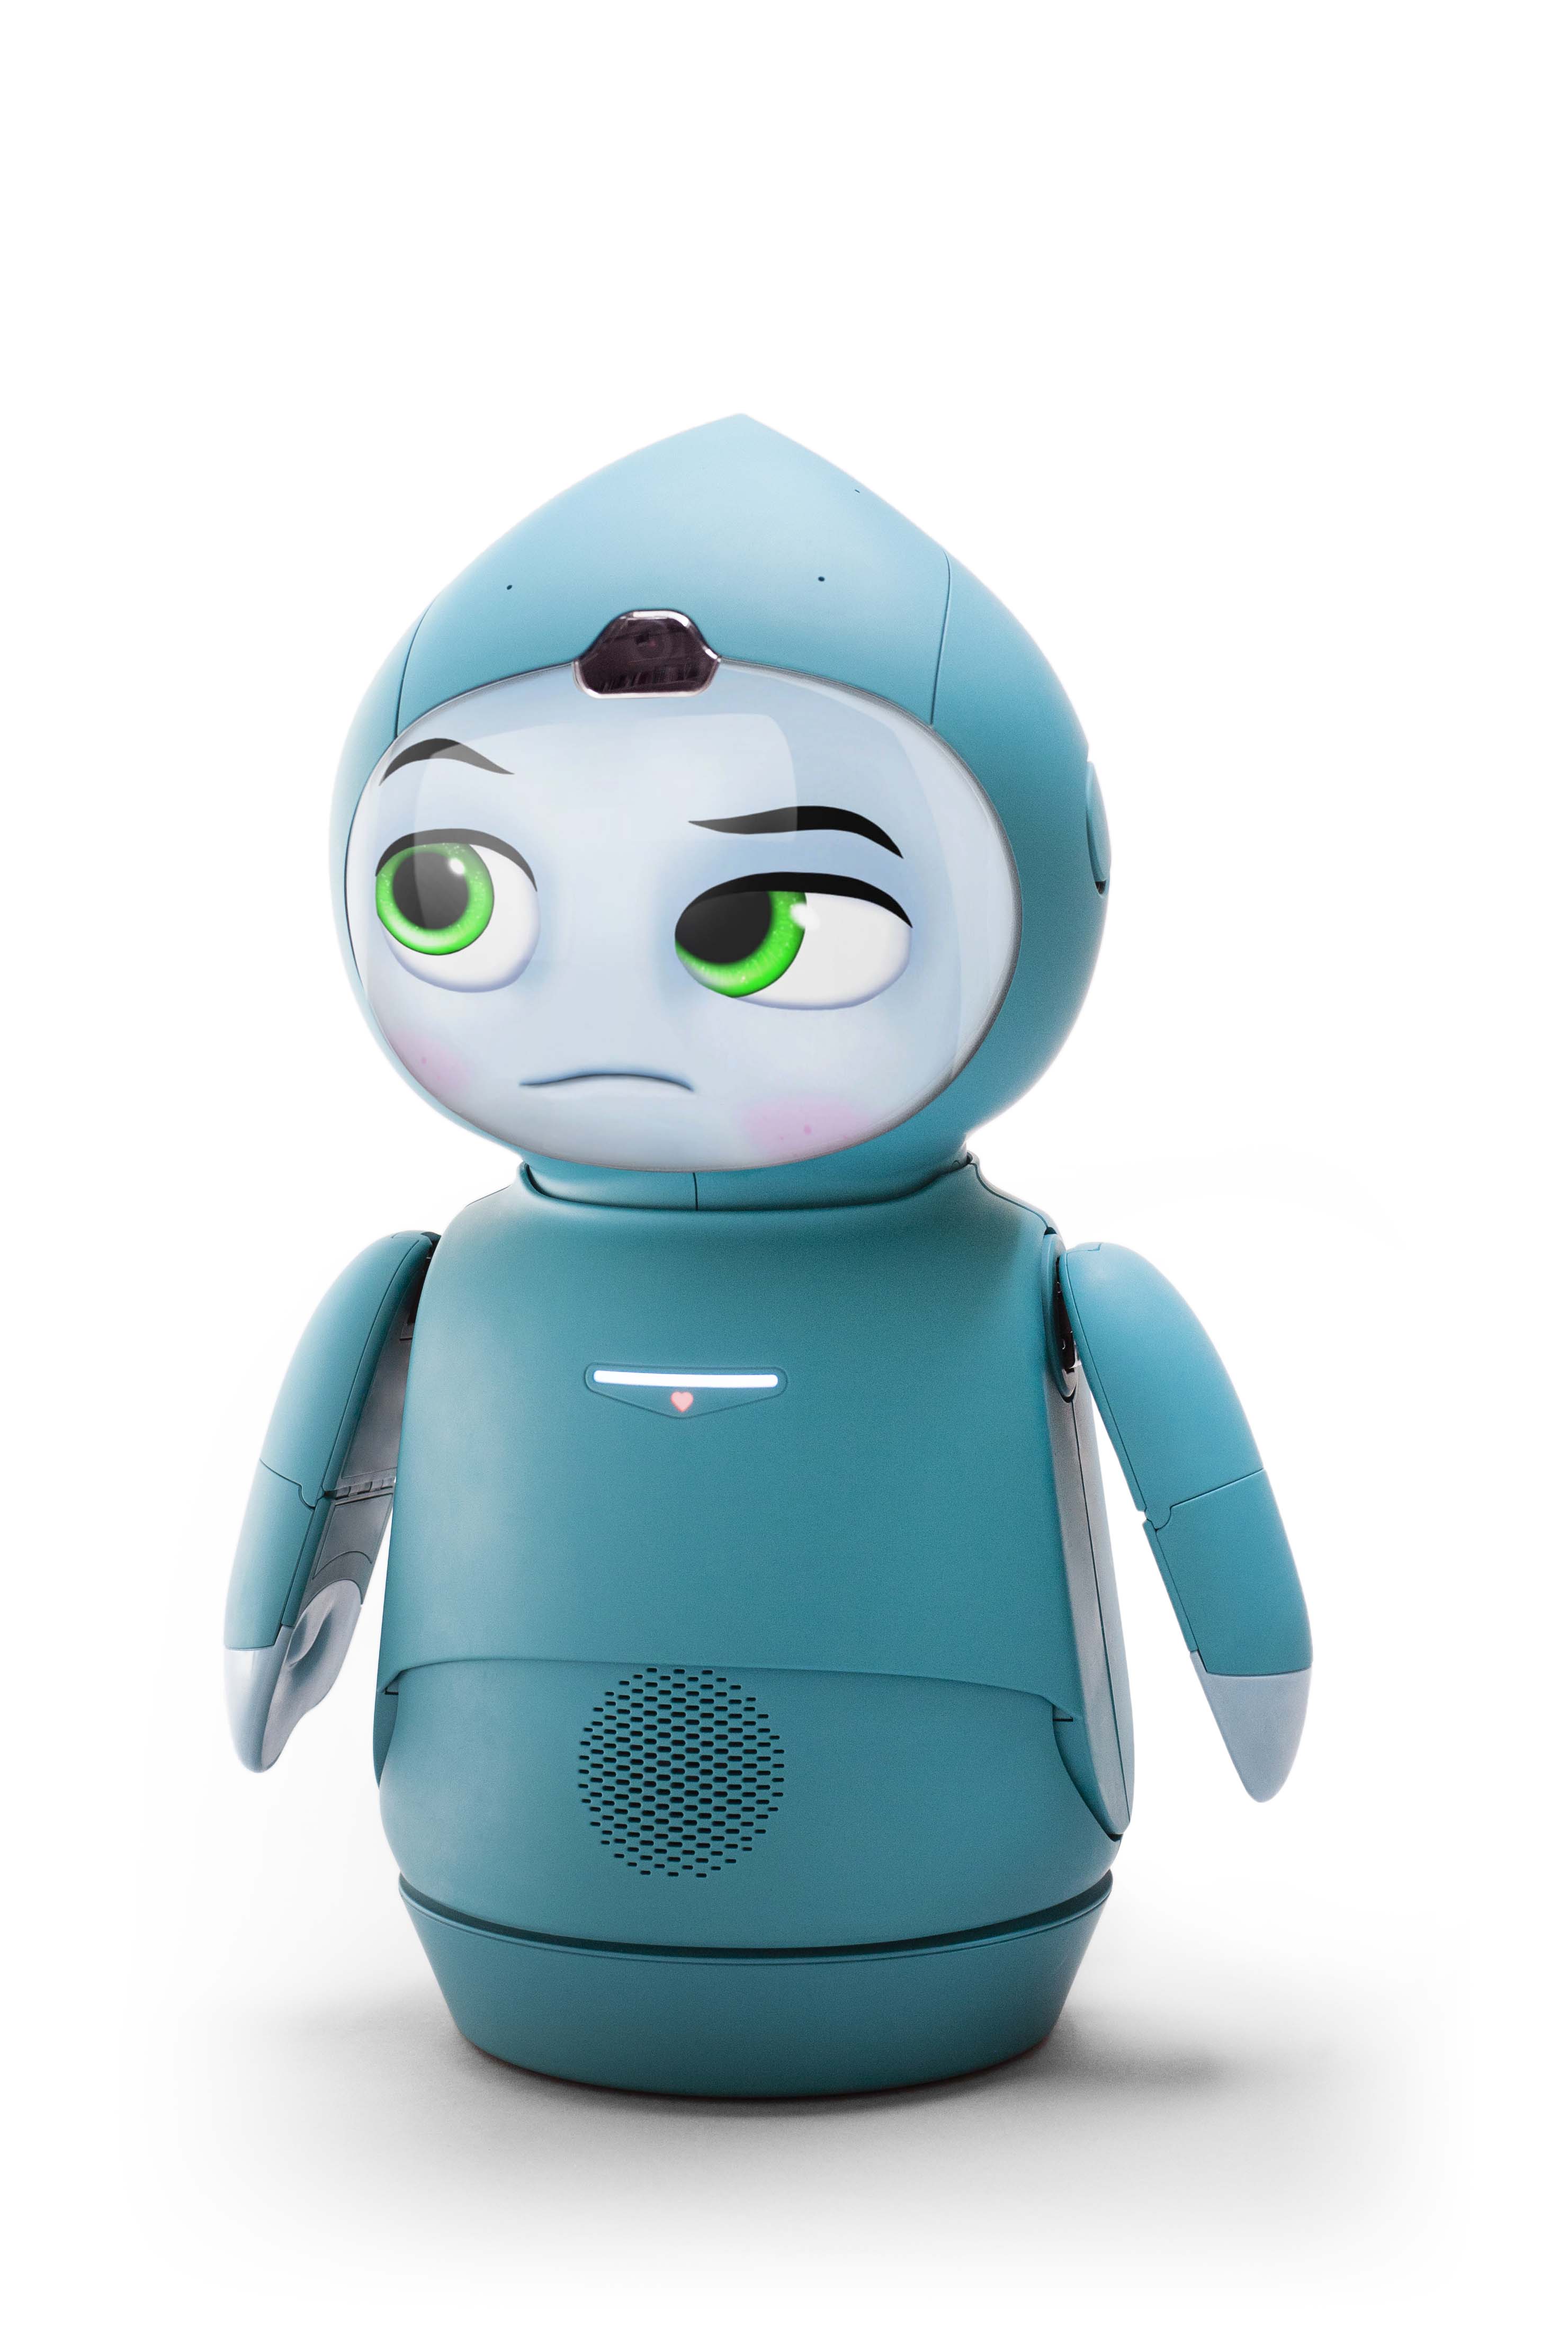 Moxie, A Revolutionary Child Development Robot 